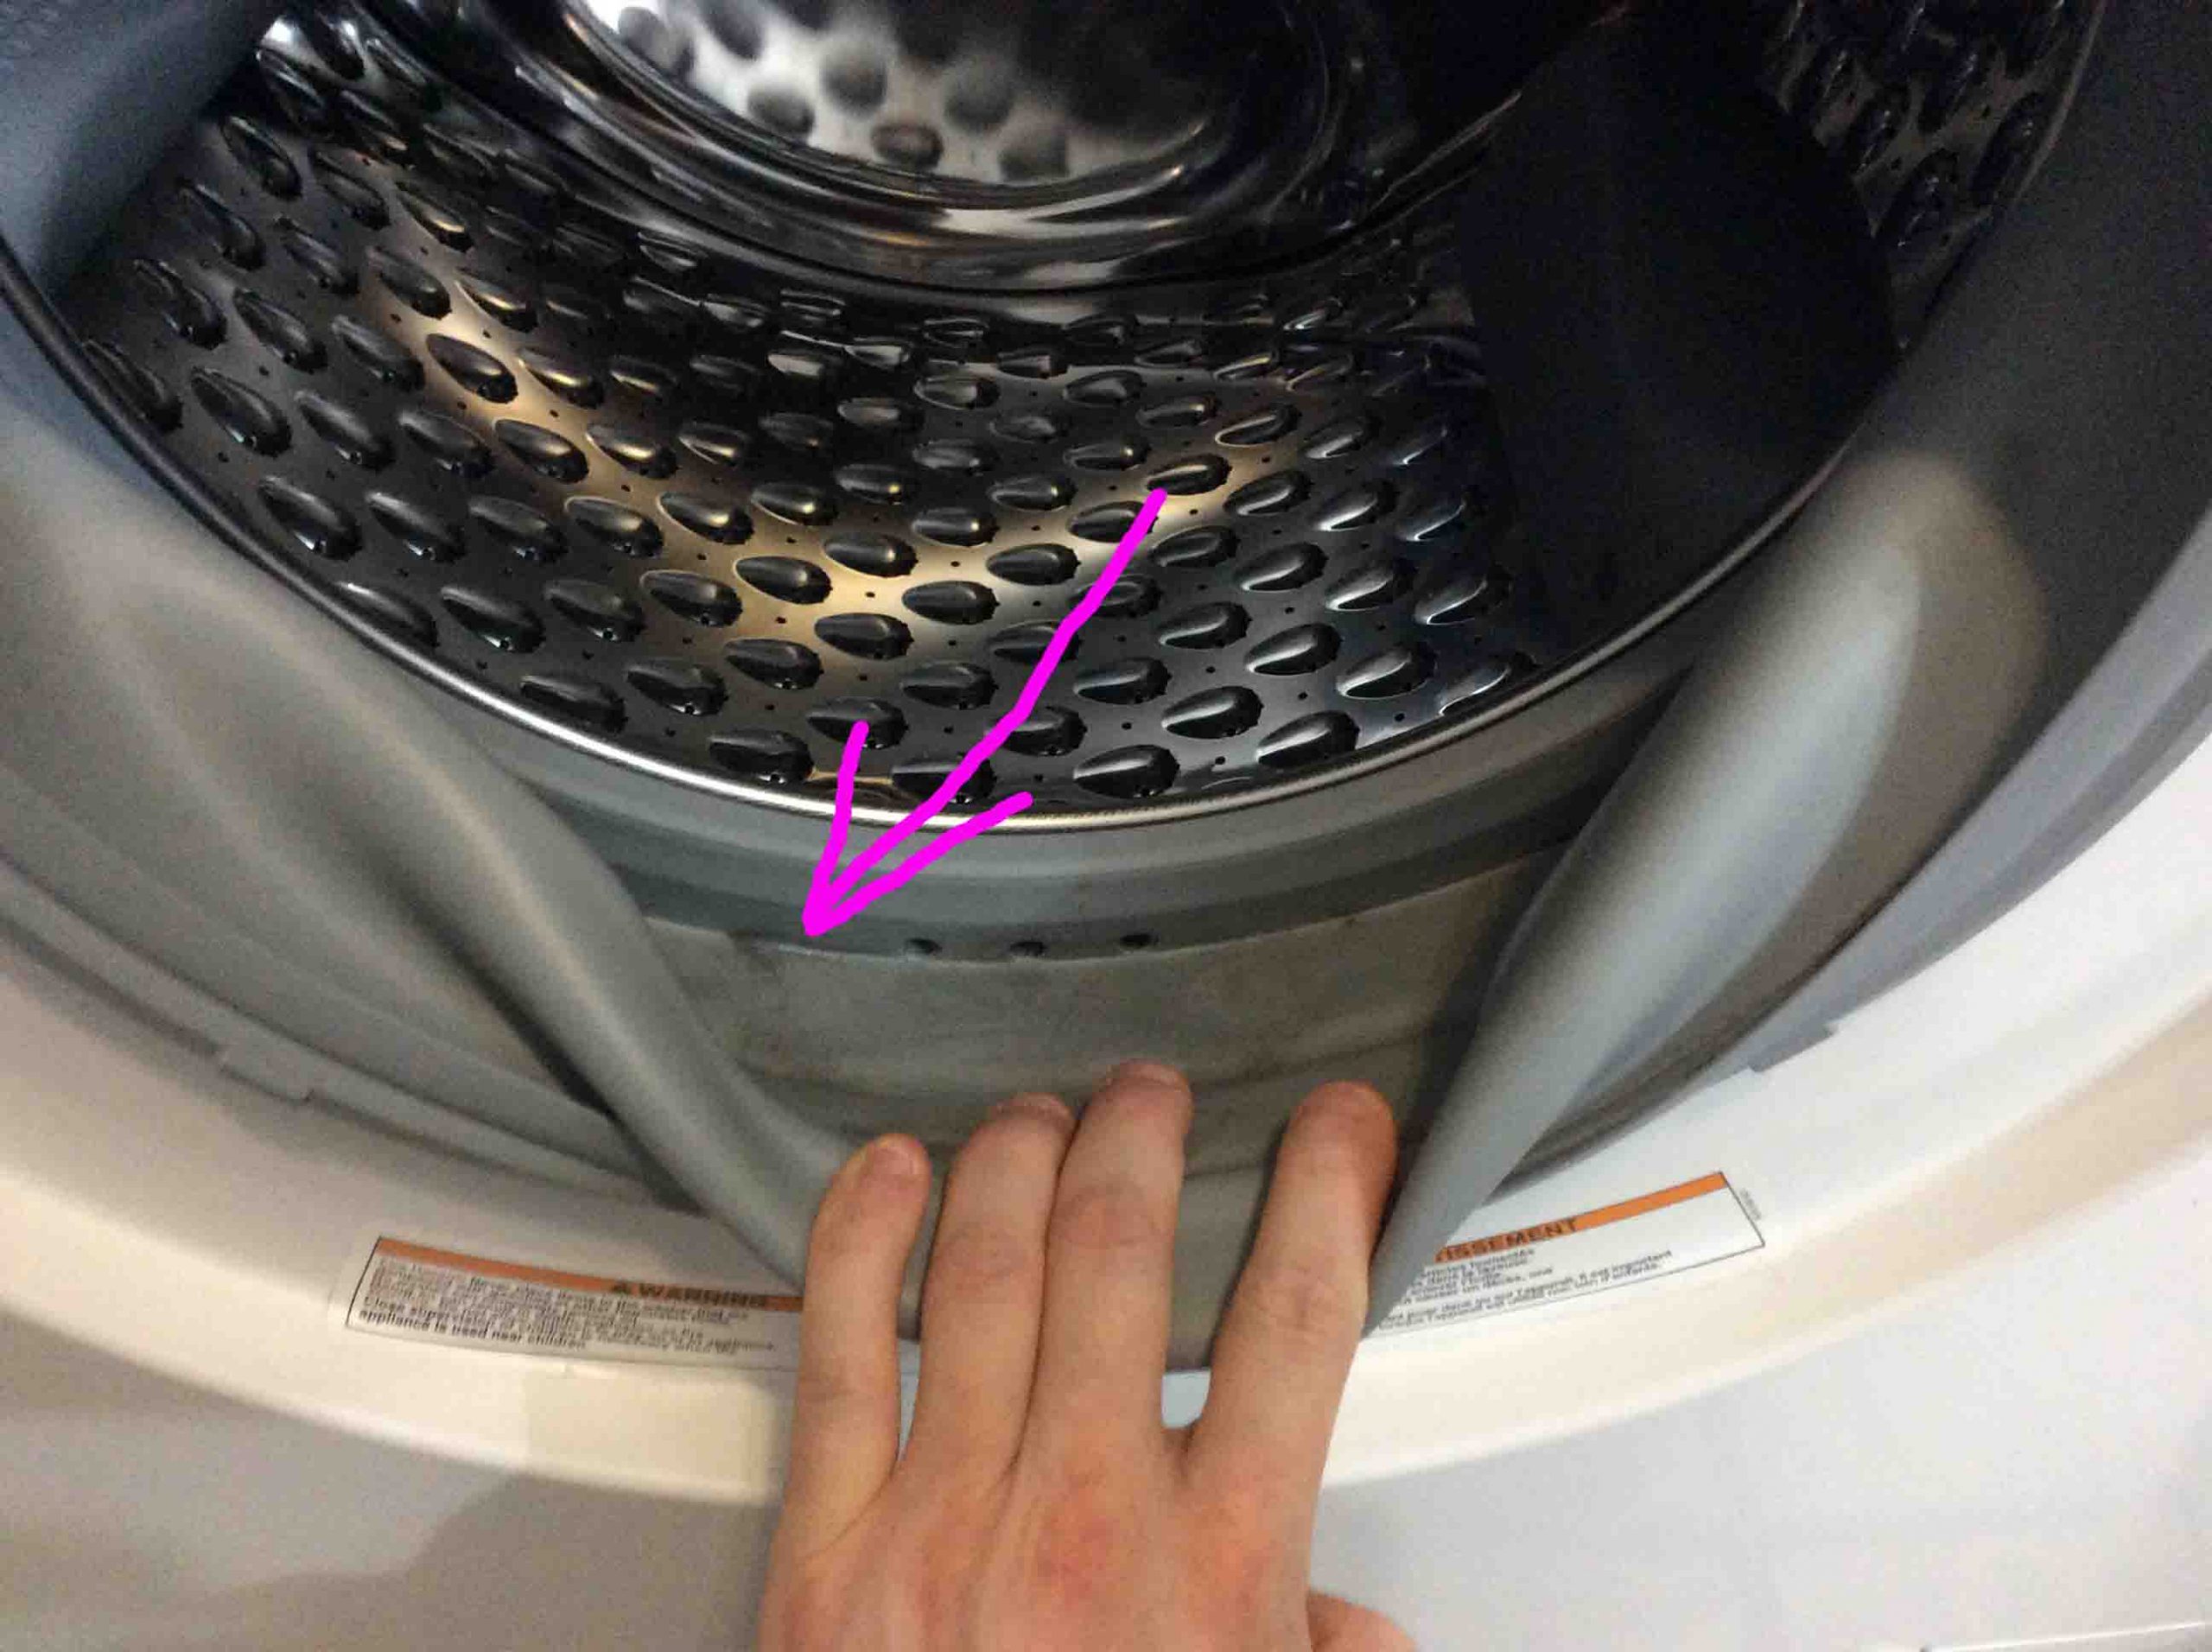 Anoi omringen Conclusie How to Clean Door Gasket on Front Loader Washer - Tom's Tek Stop